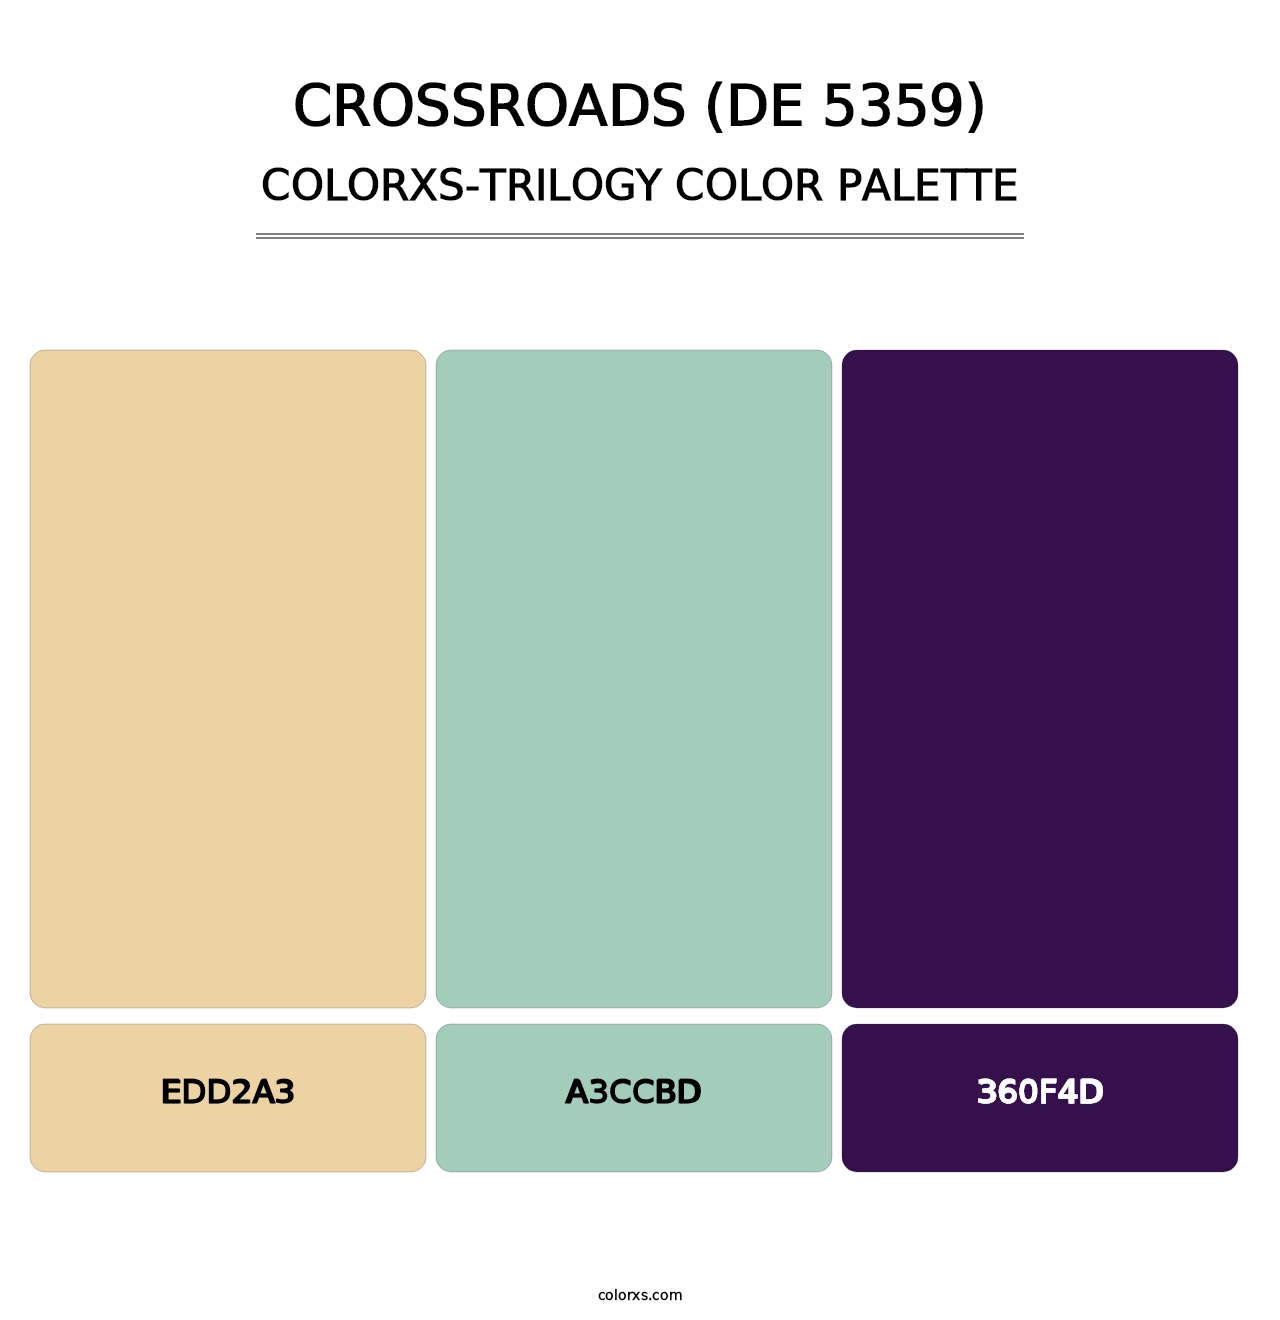 Crossroads (DE 5359) - Colorxs Trilogy Palette